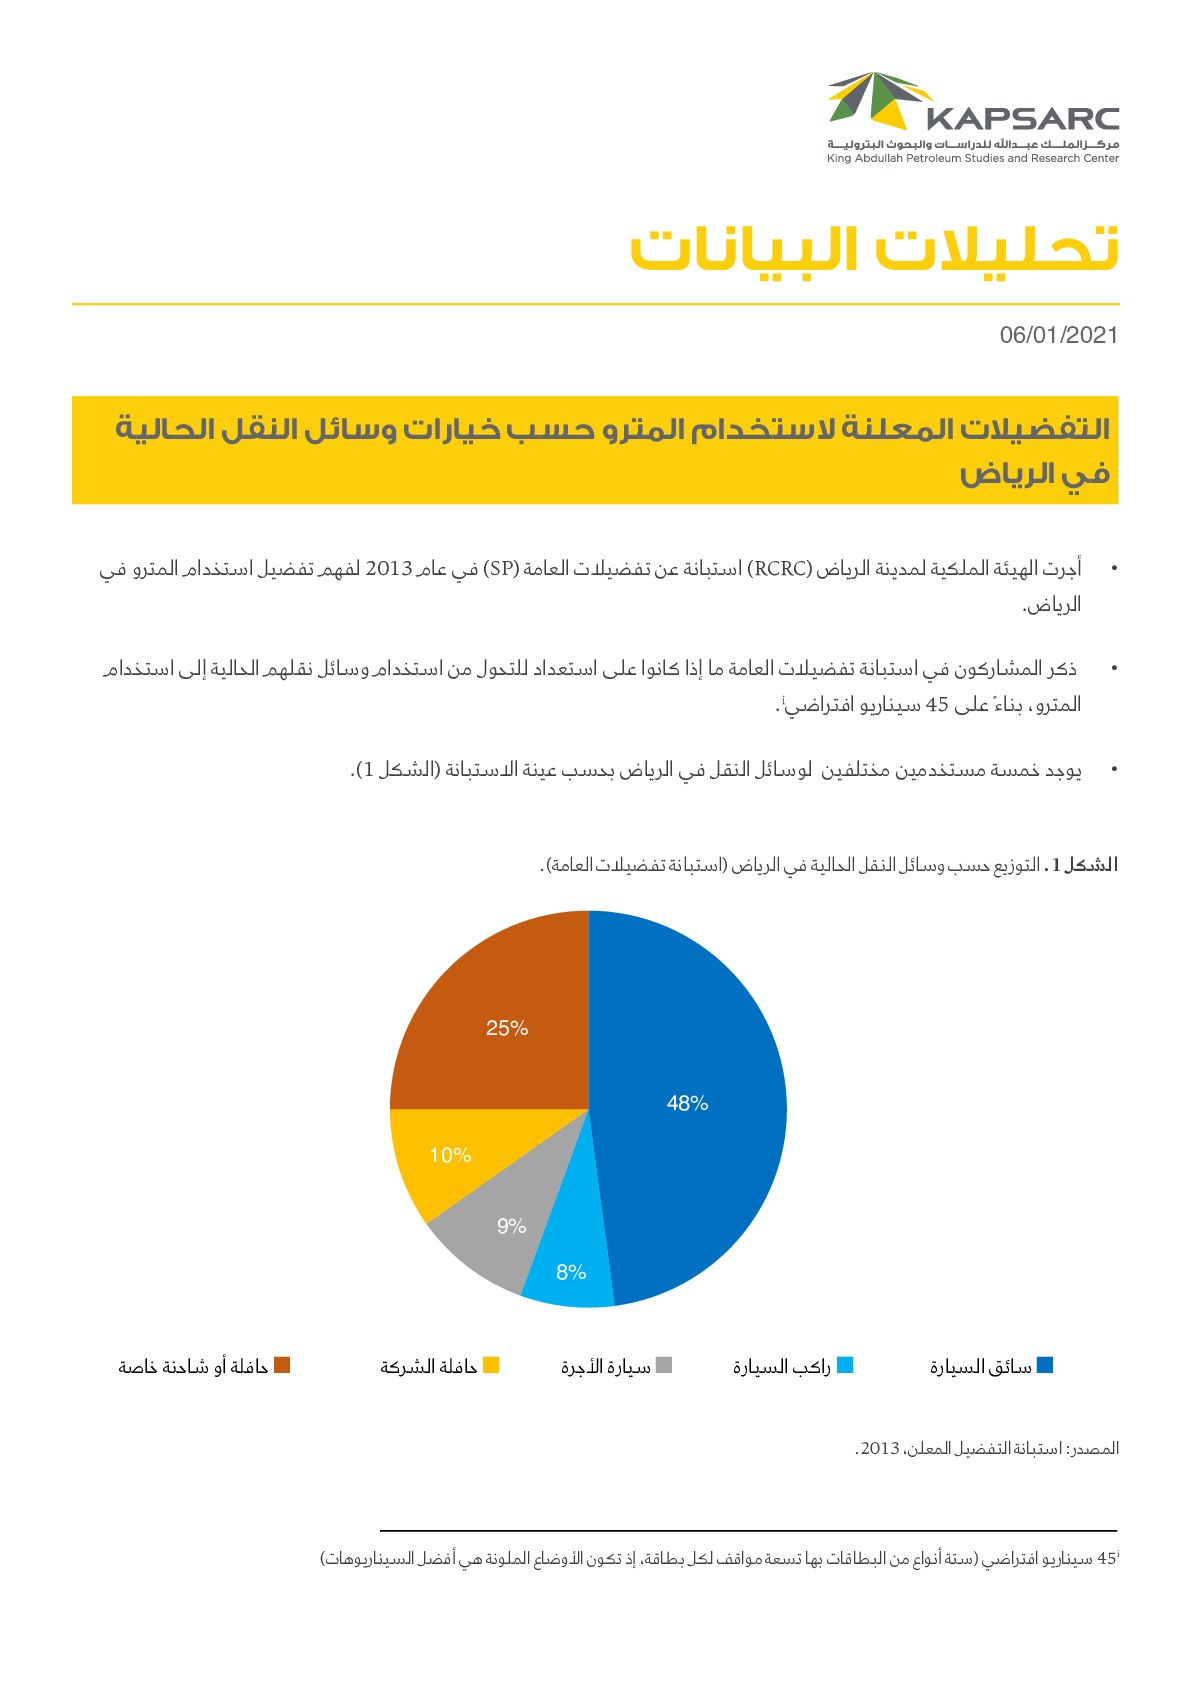 التفضيلات المعلنة لاستخدام المترو حسب خيارات وسائل النقل الحالية في الرياض